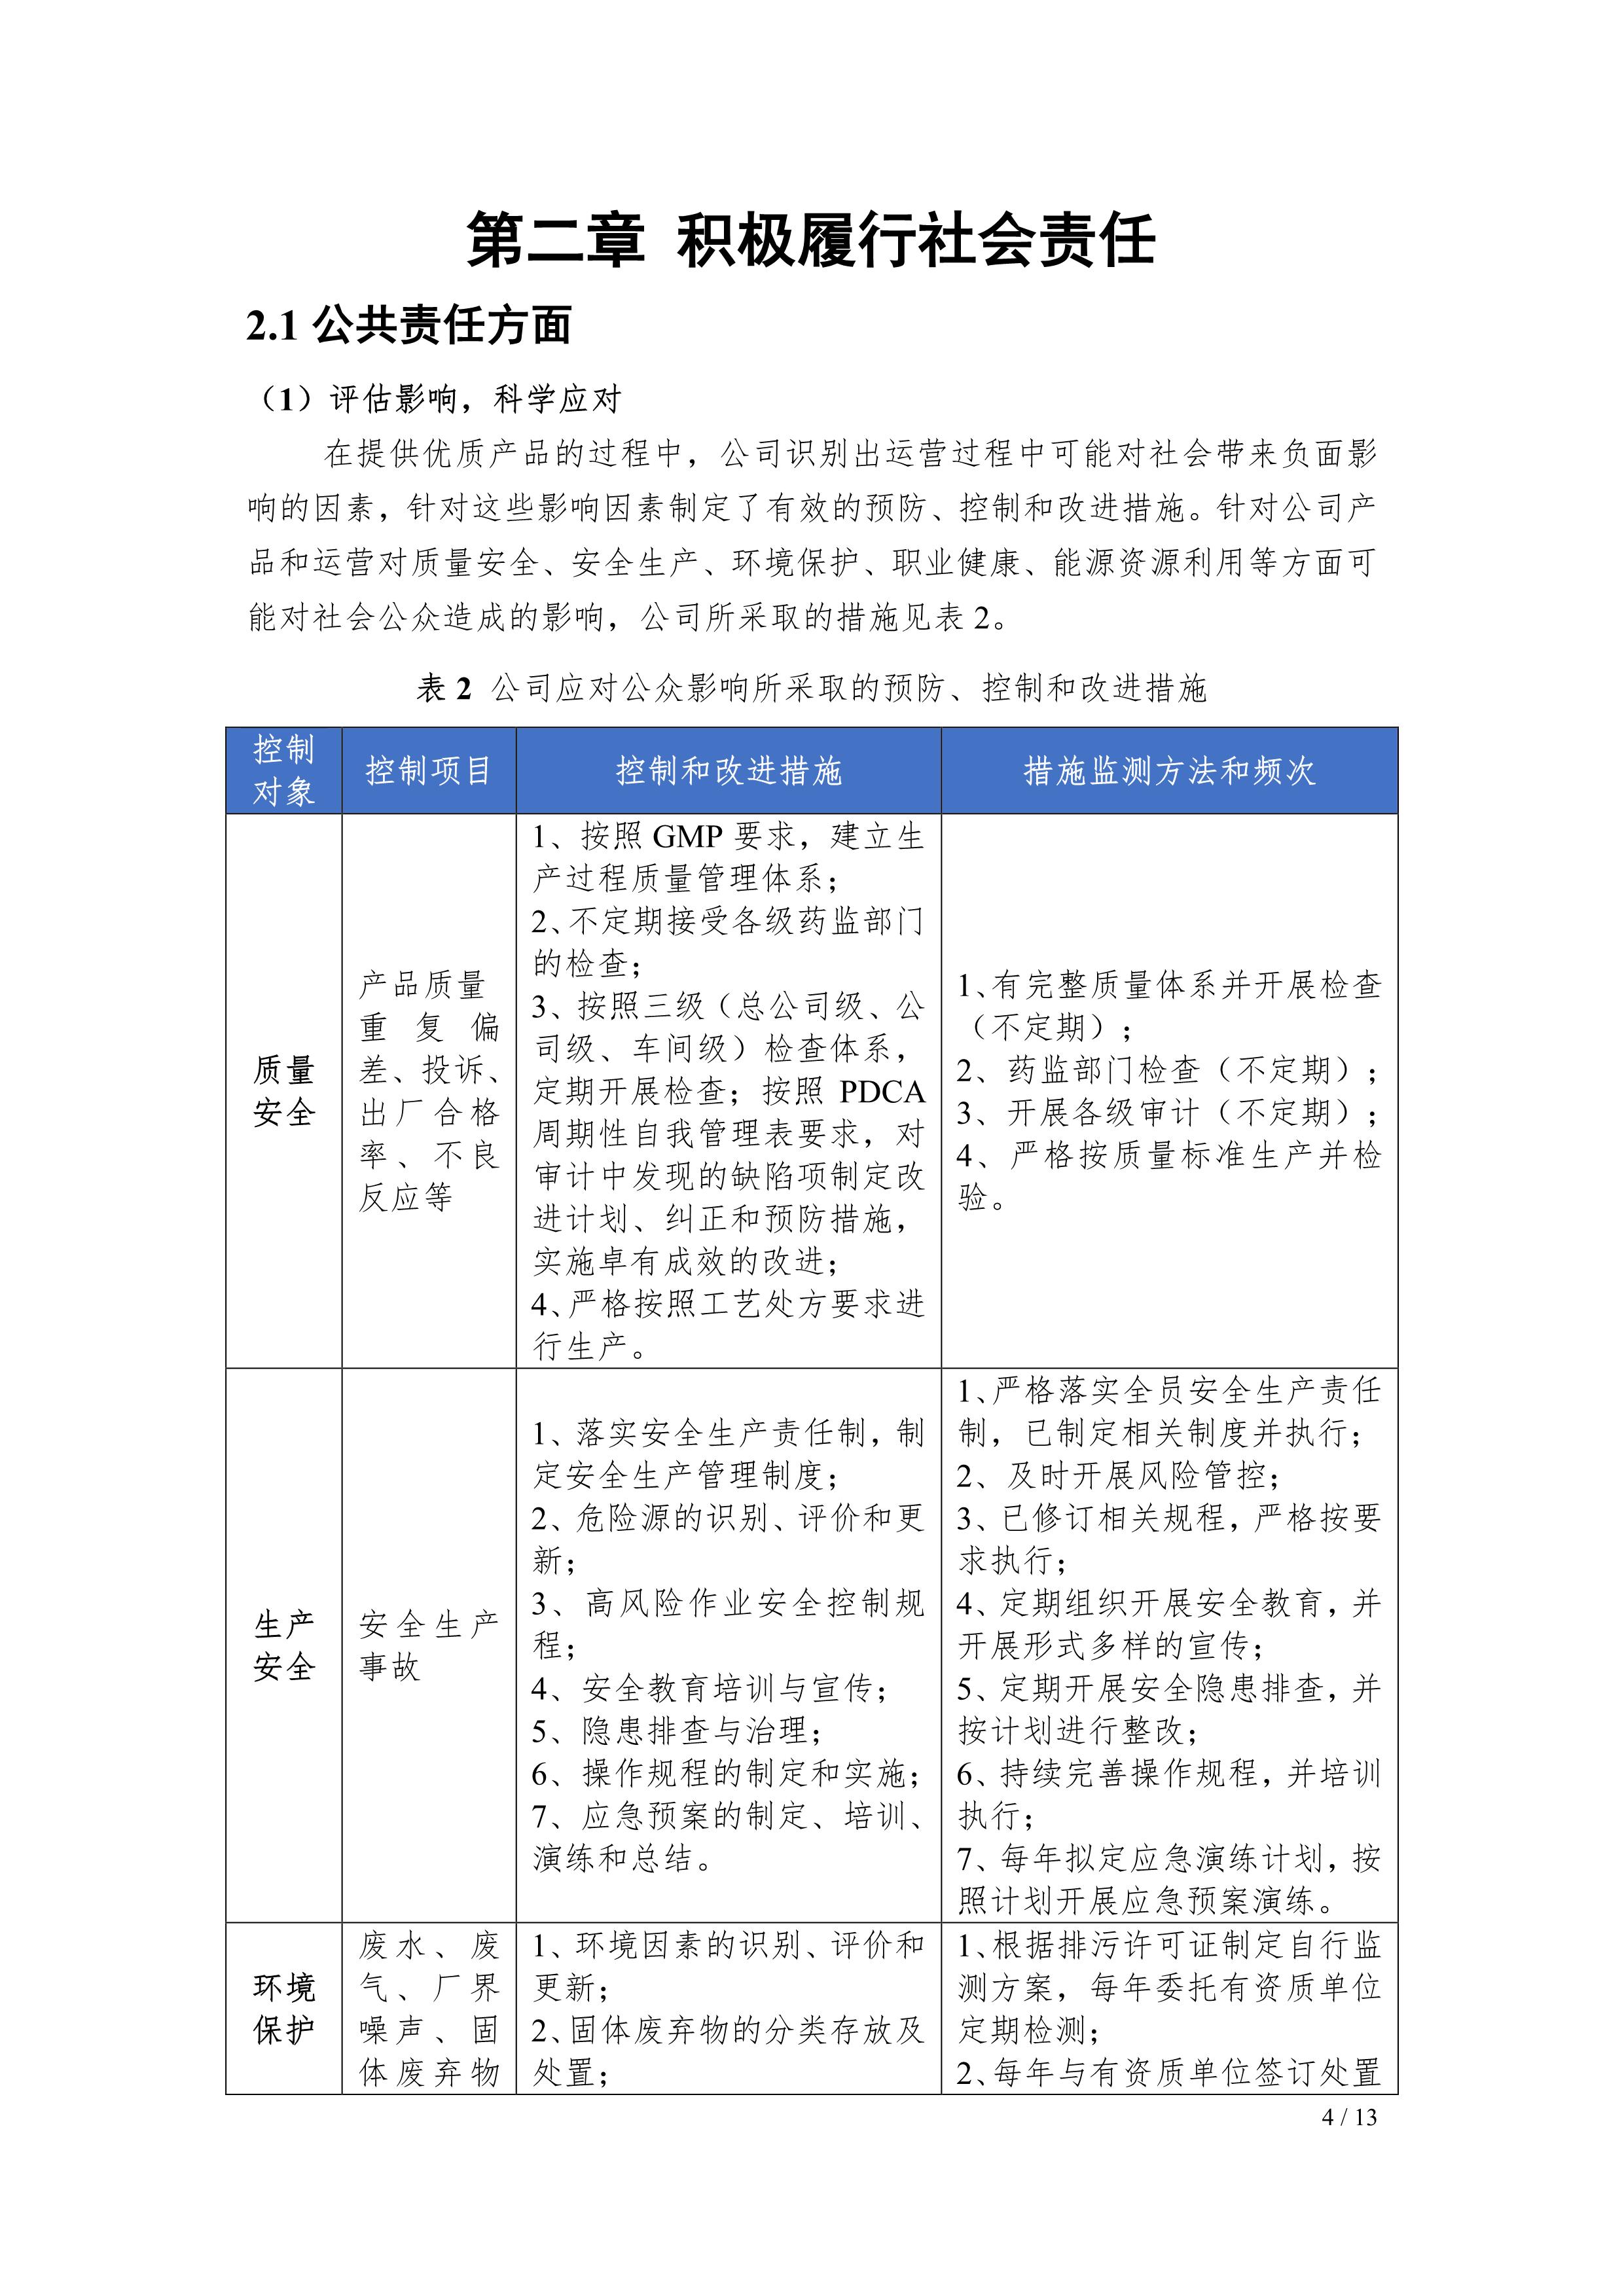 江苏制药股份有限公司2021年社会责任报告公示